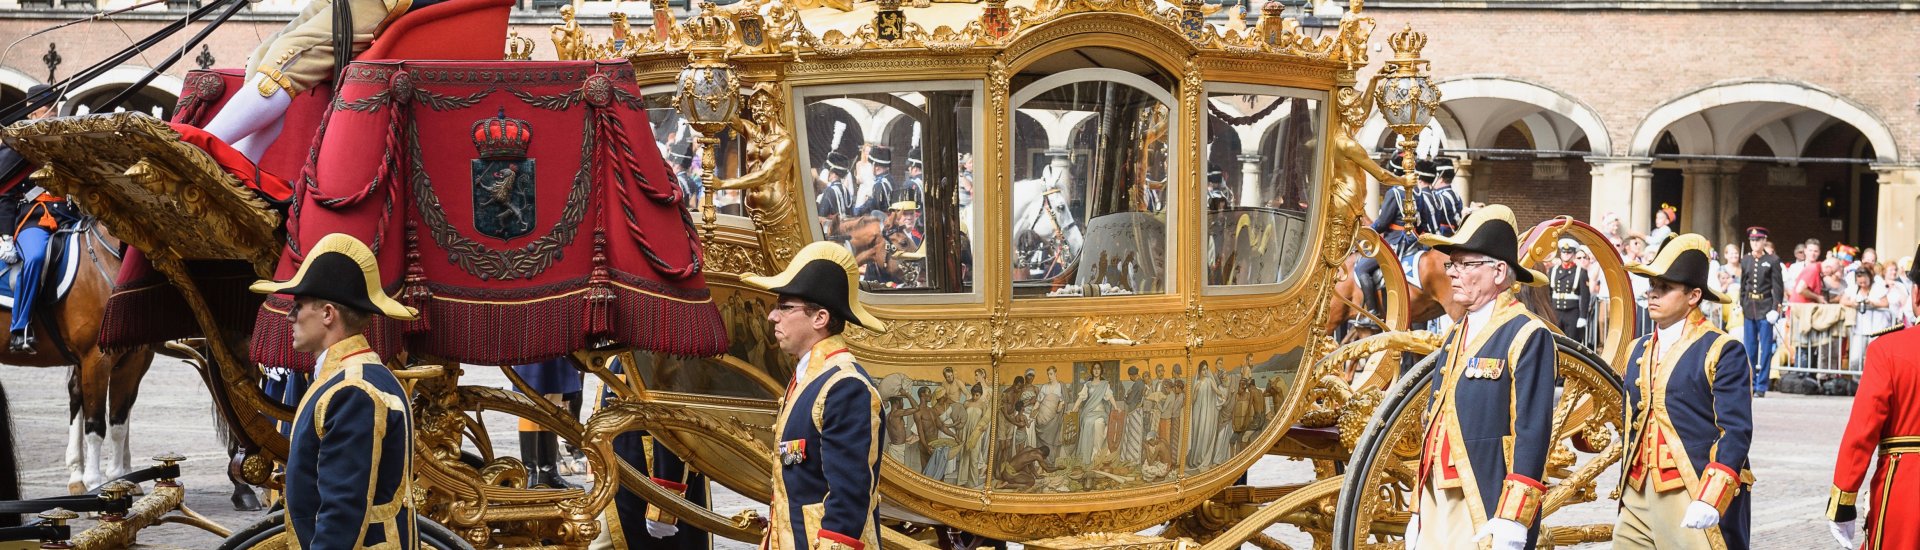 De Gouden Koets op het Binnenhof tijdens Prinsjesdag 2014.